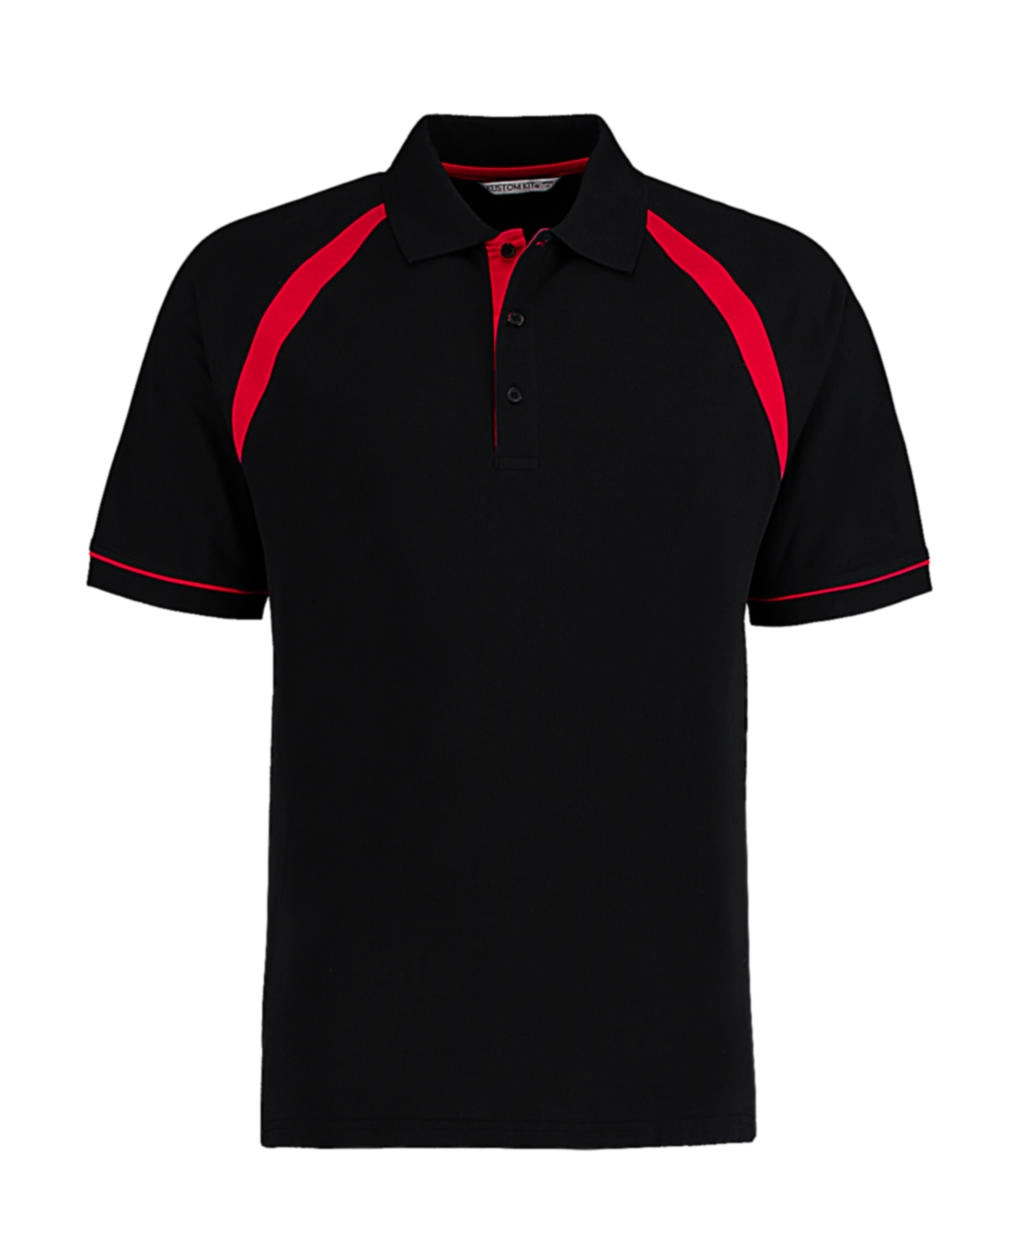 Classic Fit Oak Hill Polo zum Besticken und Bedrucken in der Farbe Black/Bright Red mit Ihren Logo, Schriftzug oder Motiv.